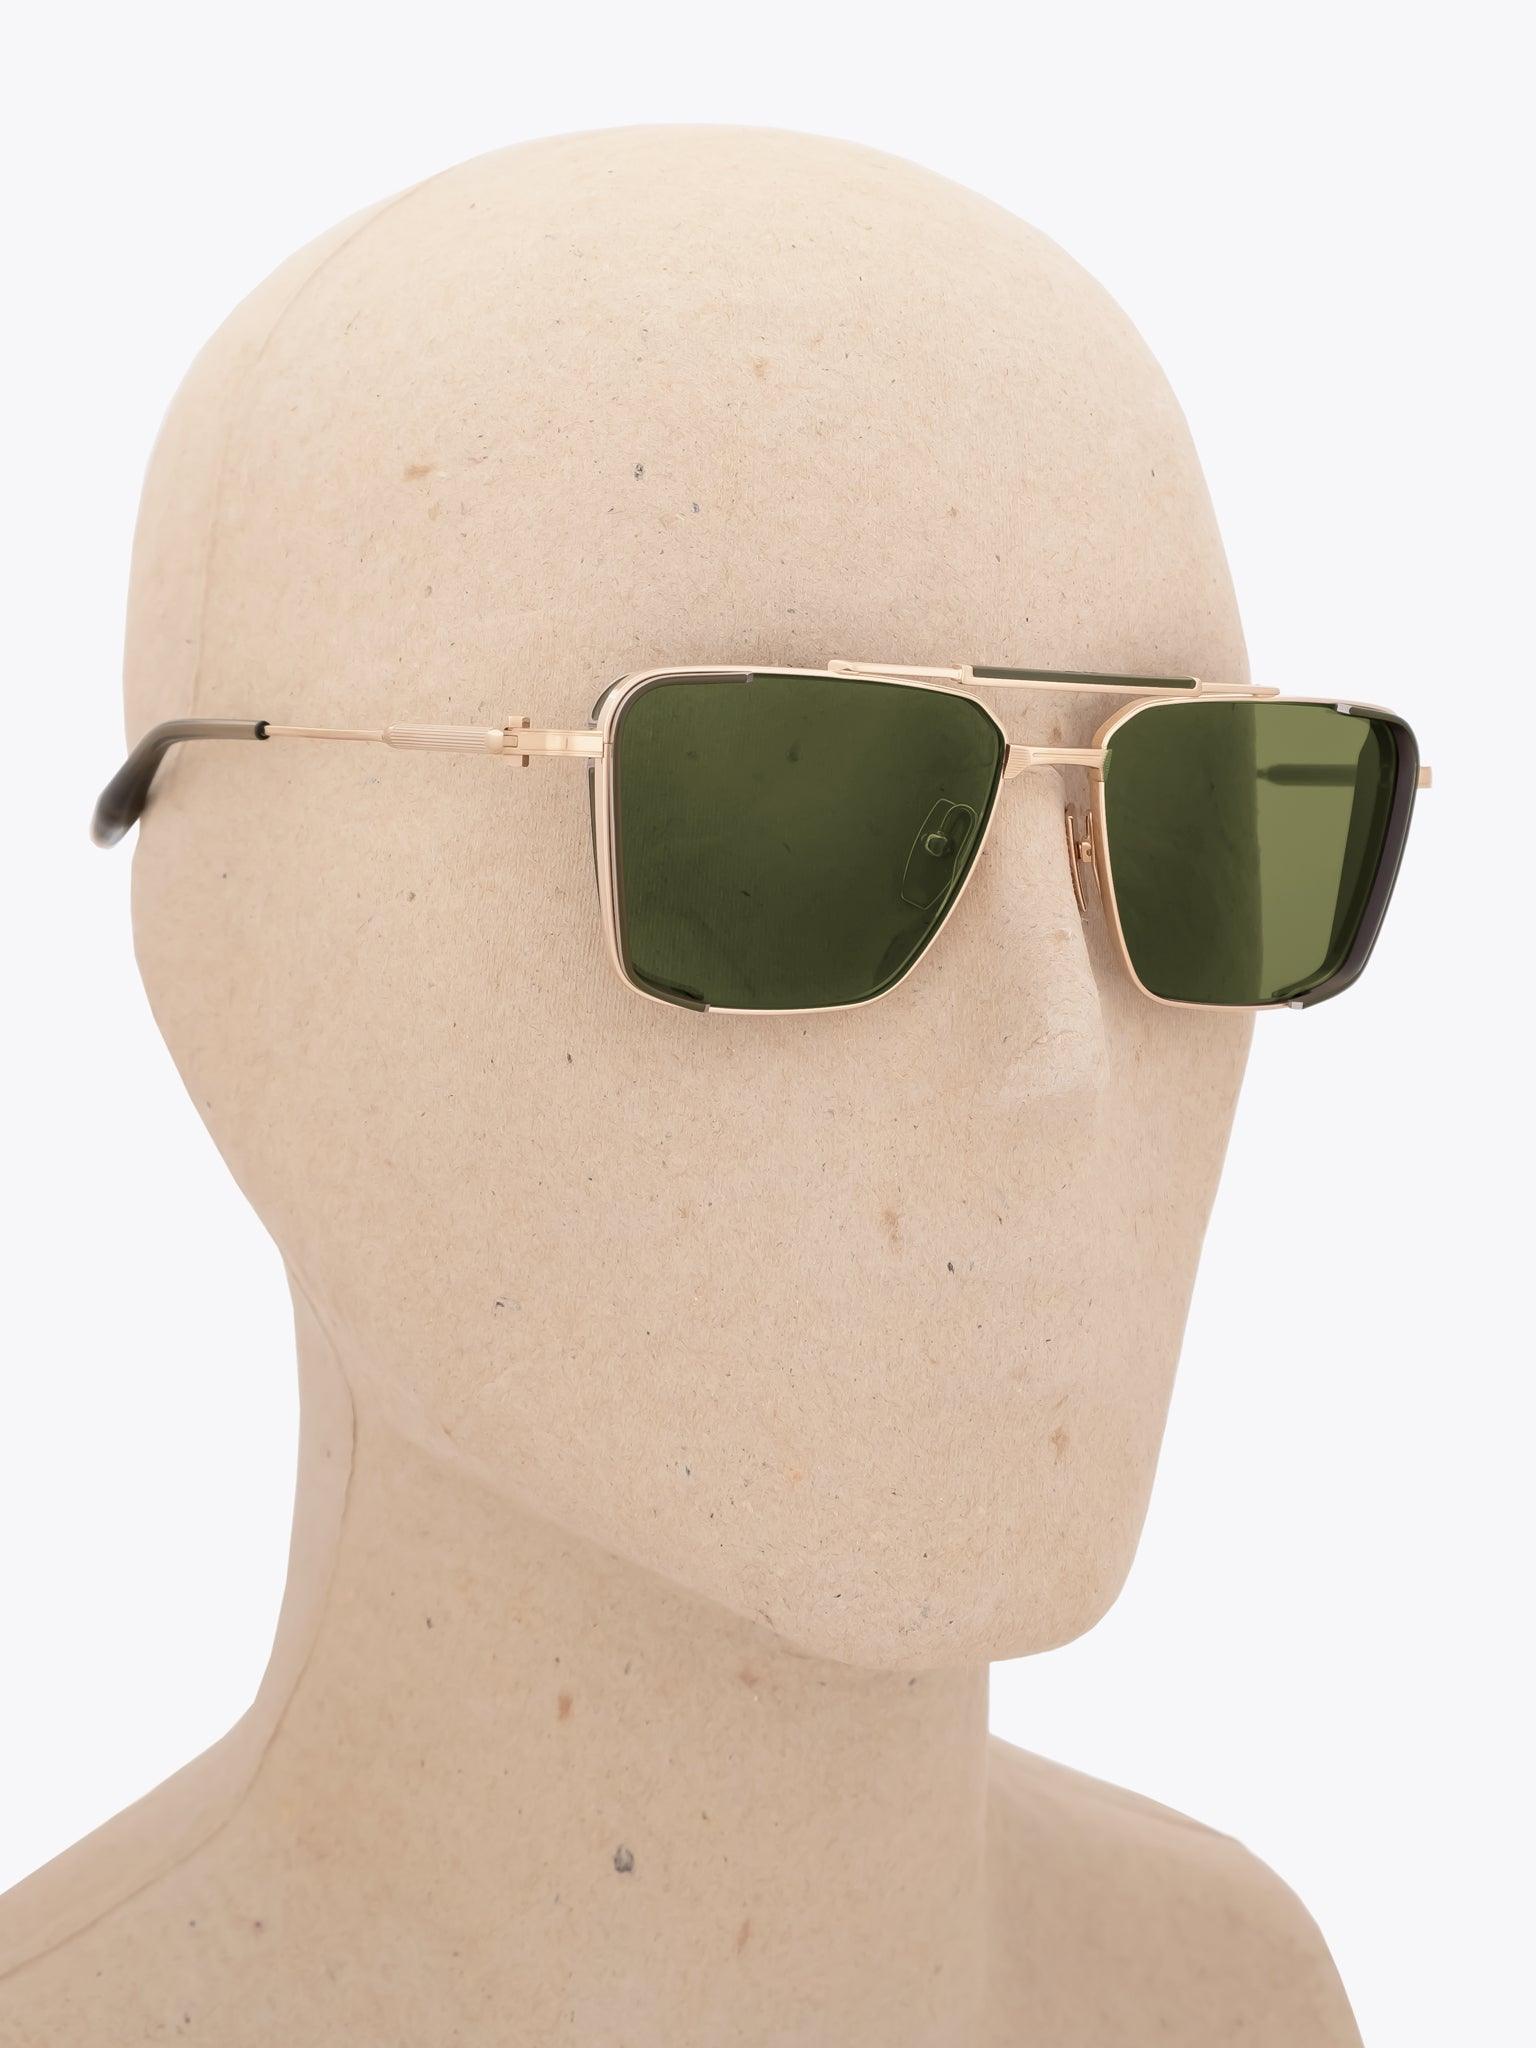 AKONI Hera Gold/Palladium Sunglasses